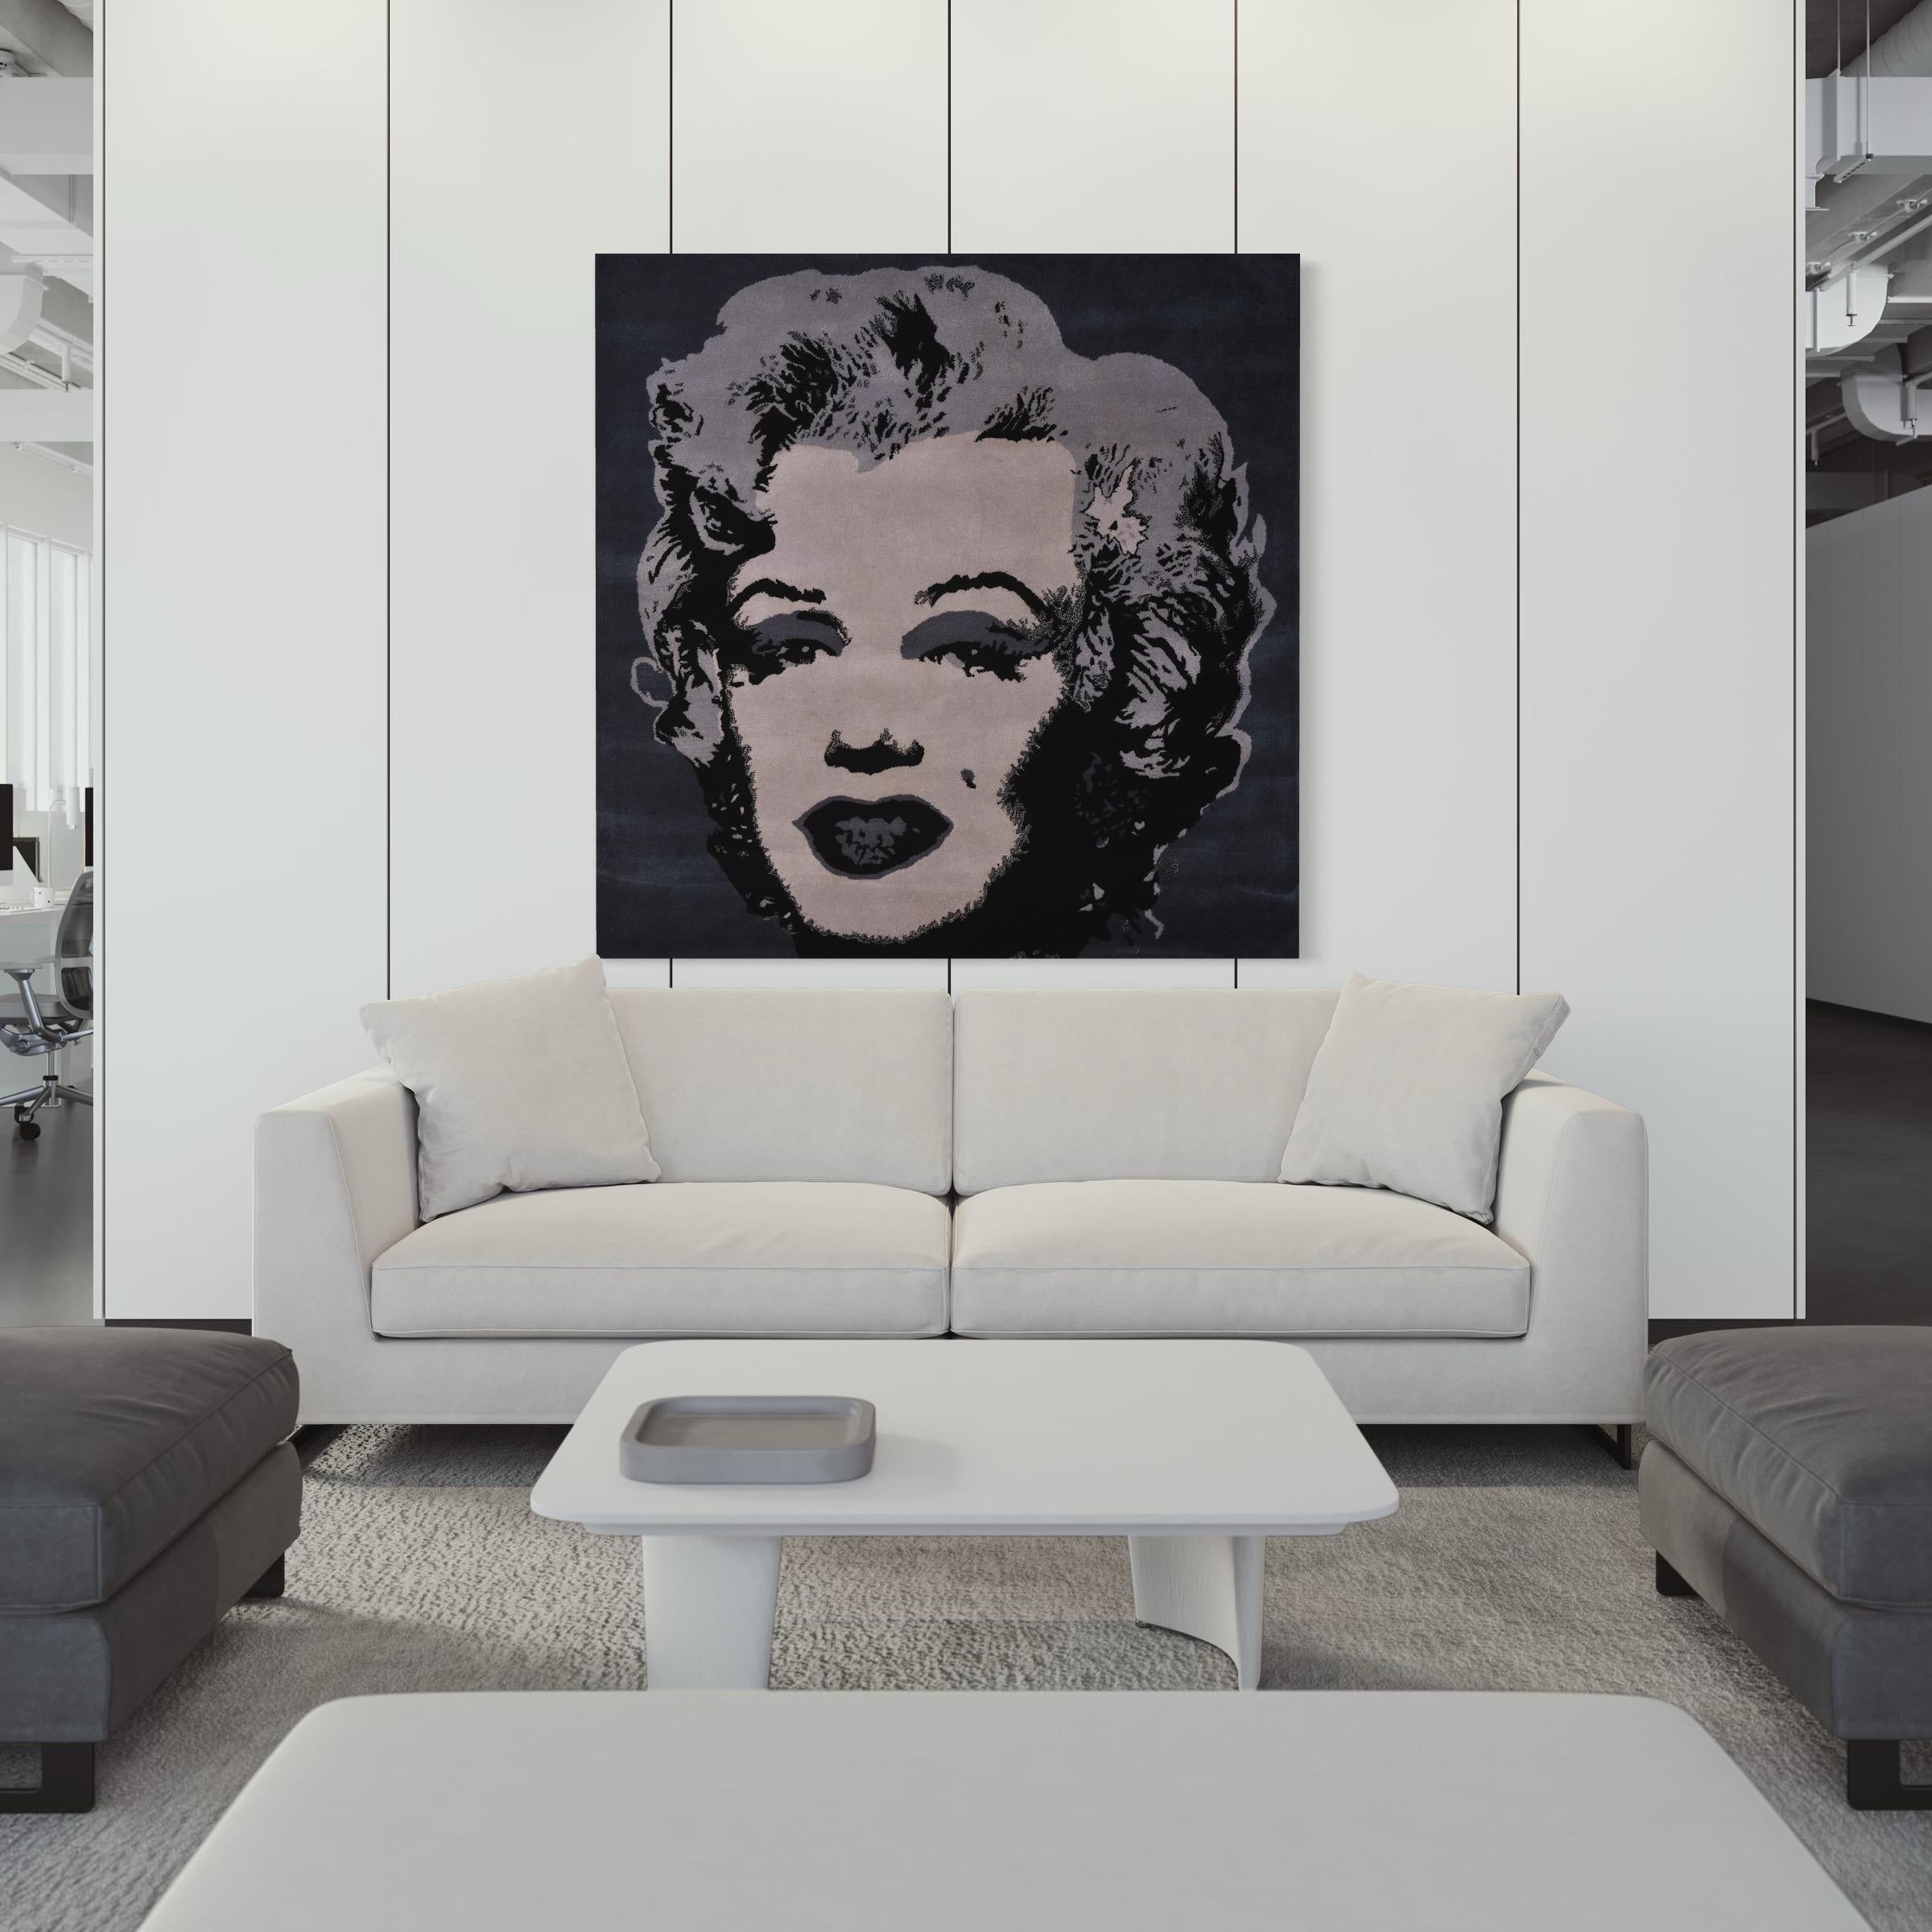 Andy Warhol (nach)
Silberne Marilyn, 1990er Jahre
Handgefertigter Teppich
150 × 150 cm (59.1 × 59.1 in)
Echtheitszertifikat auf dem Label
Auflage von 20 Stück
In ausgezeichnetem Zustand 
Herausgegeben von Modern Master Tapestries, NY
Das Kunstwerk